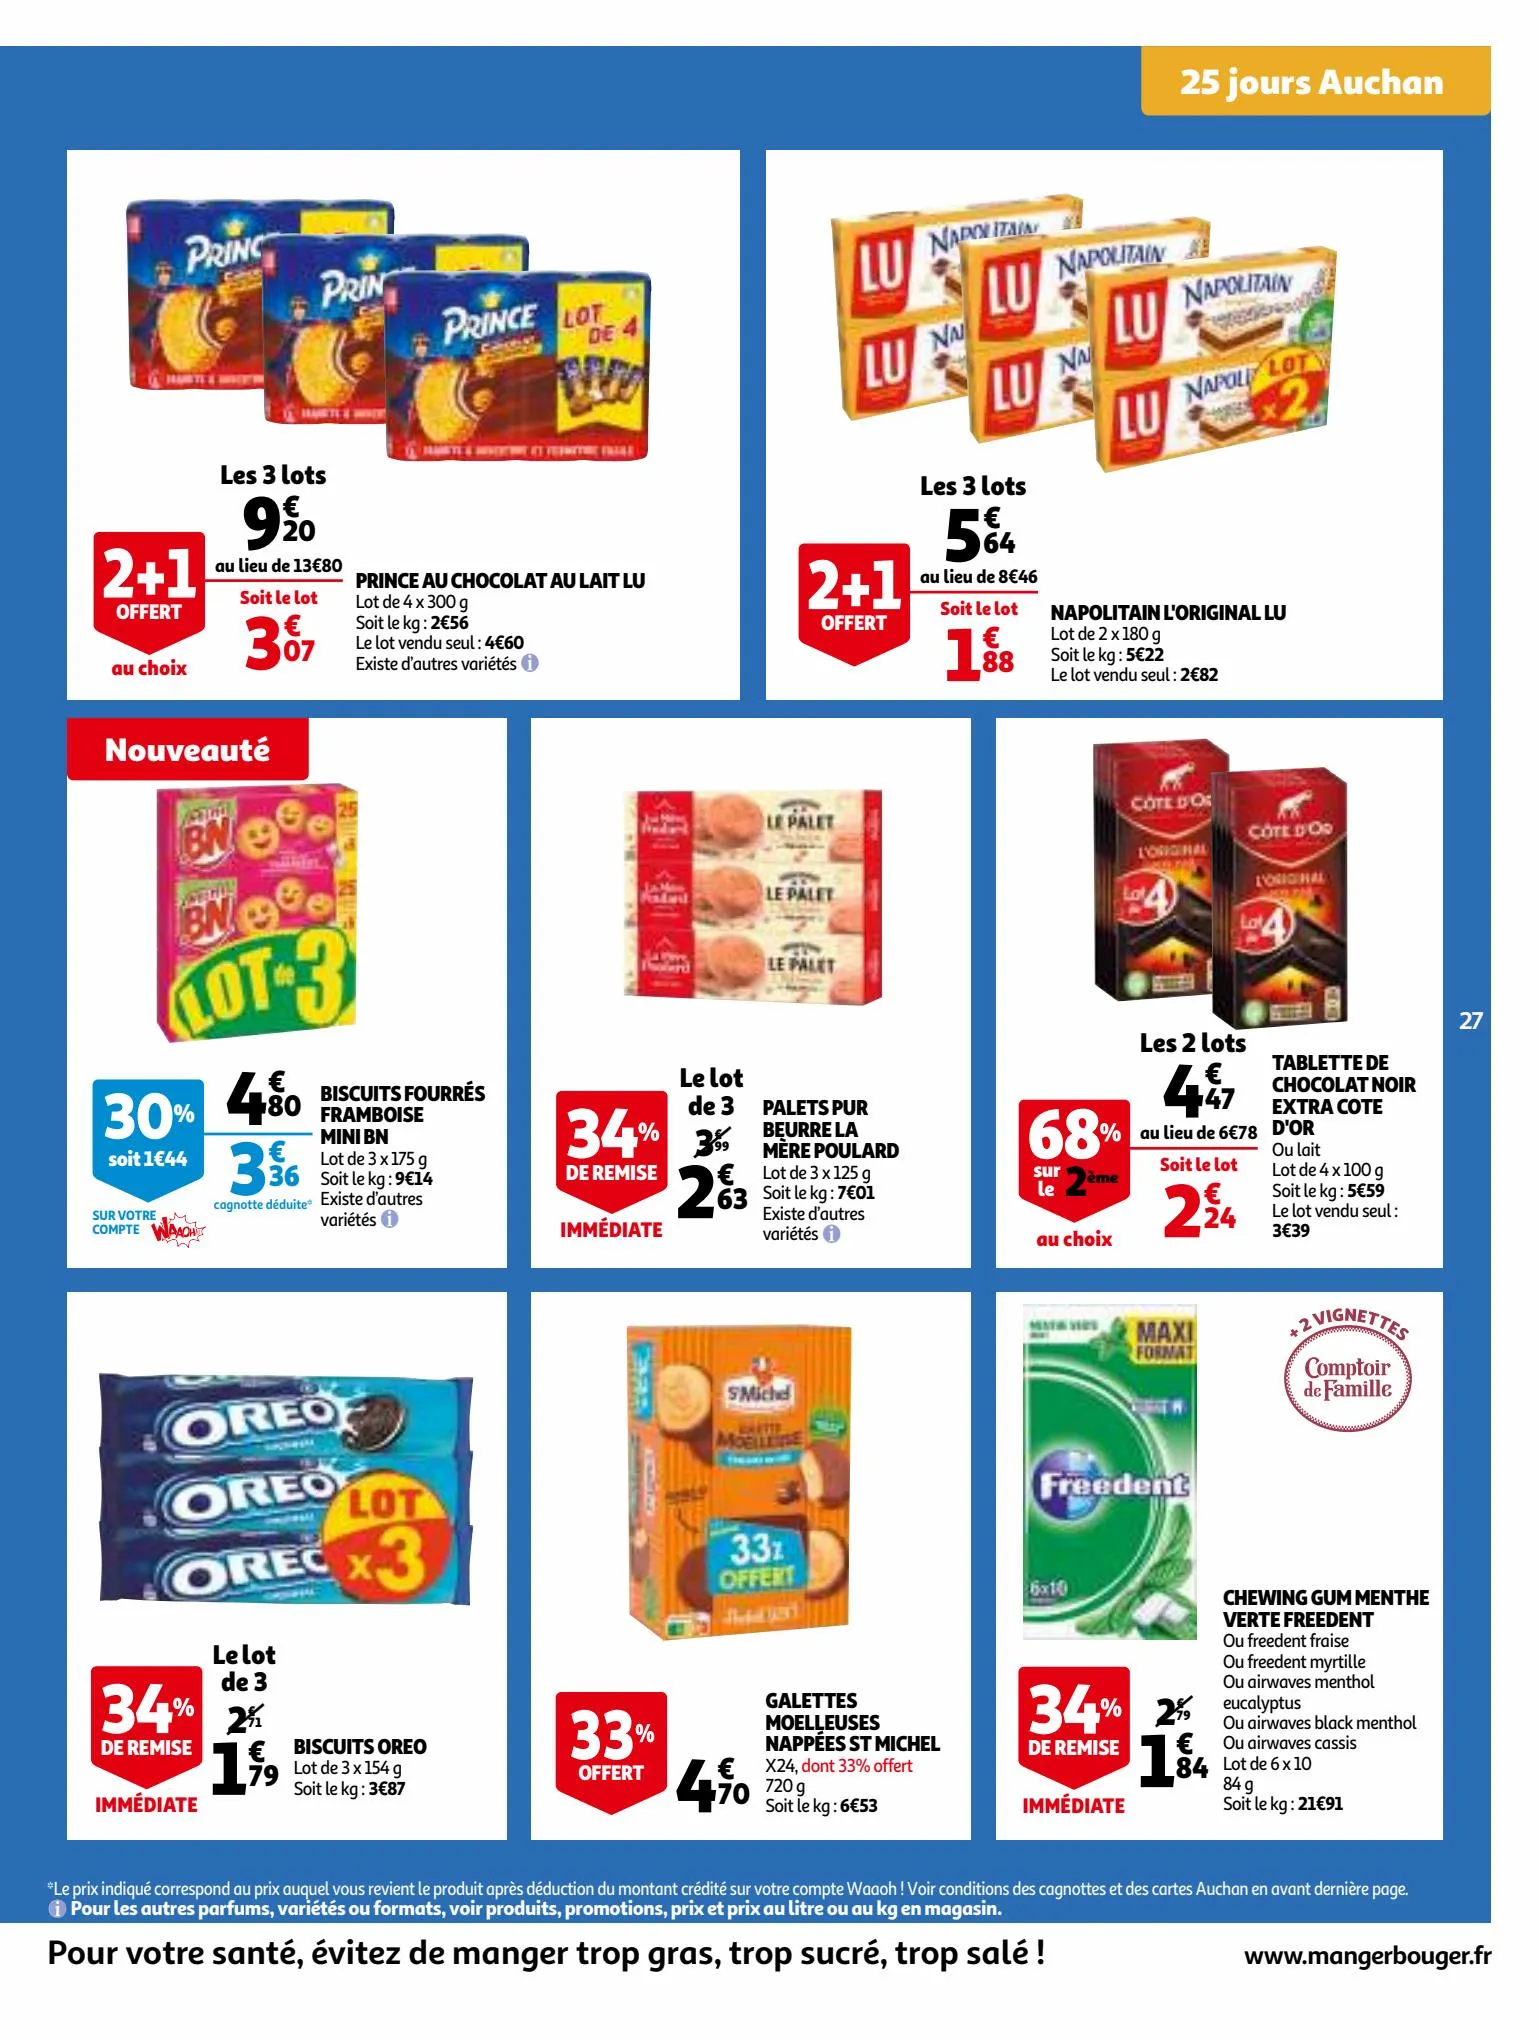 Catalogue 25 Jours Auchan, page 00027